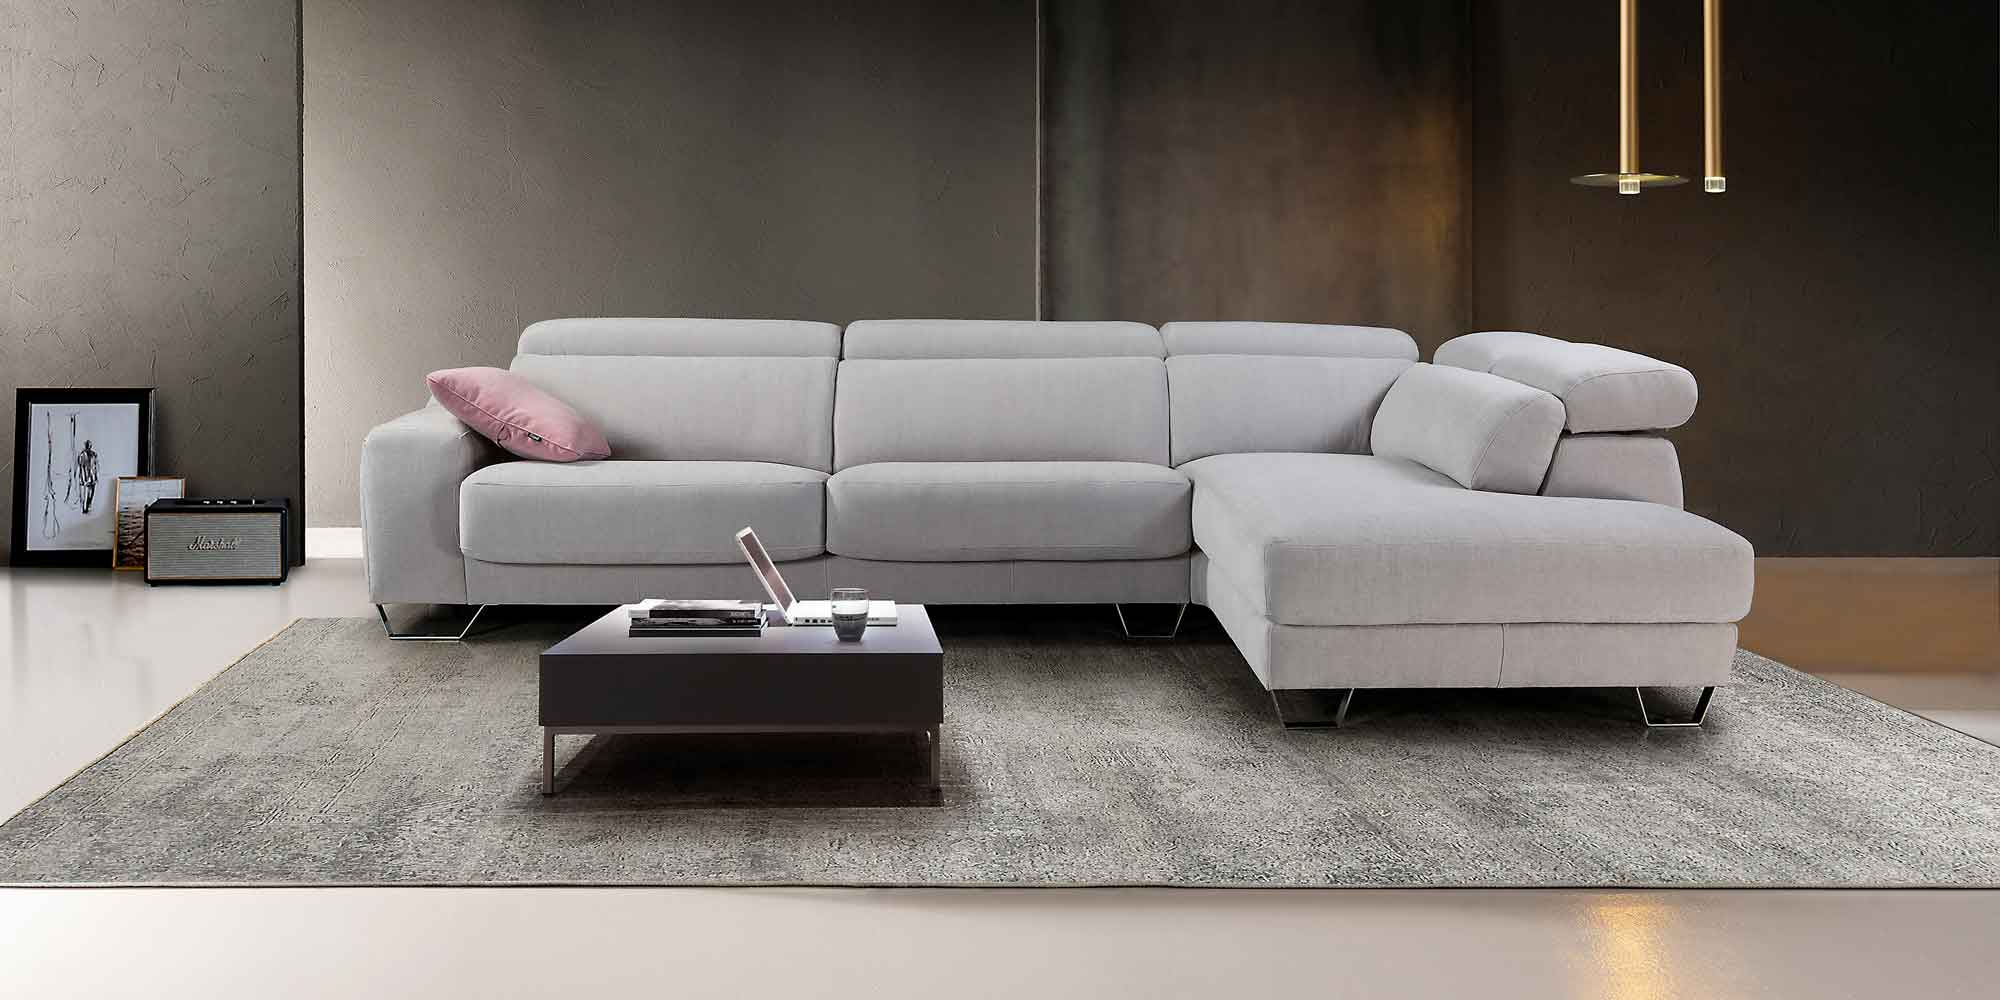 Impregnación de sofás - ¿Cómo funciona y a qué tengo que prestar atención?  – Livom